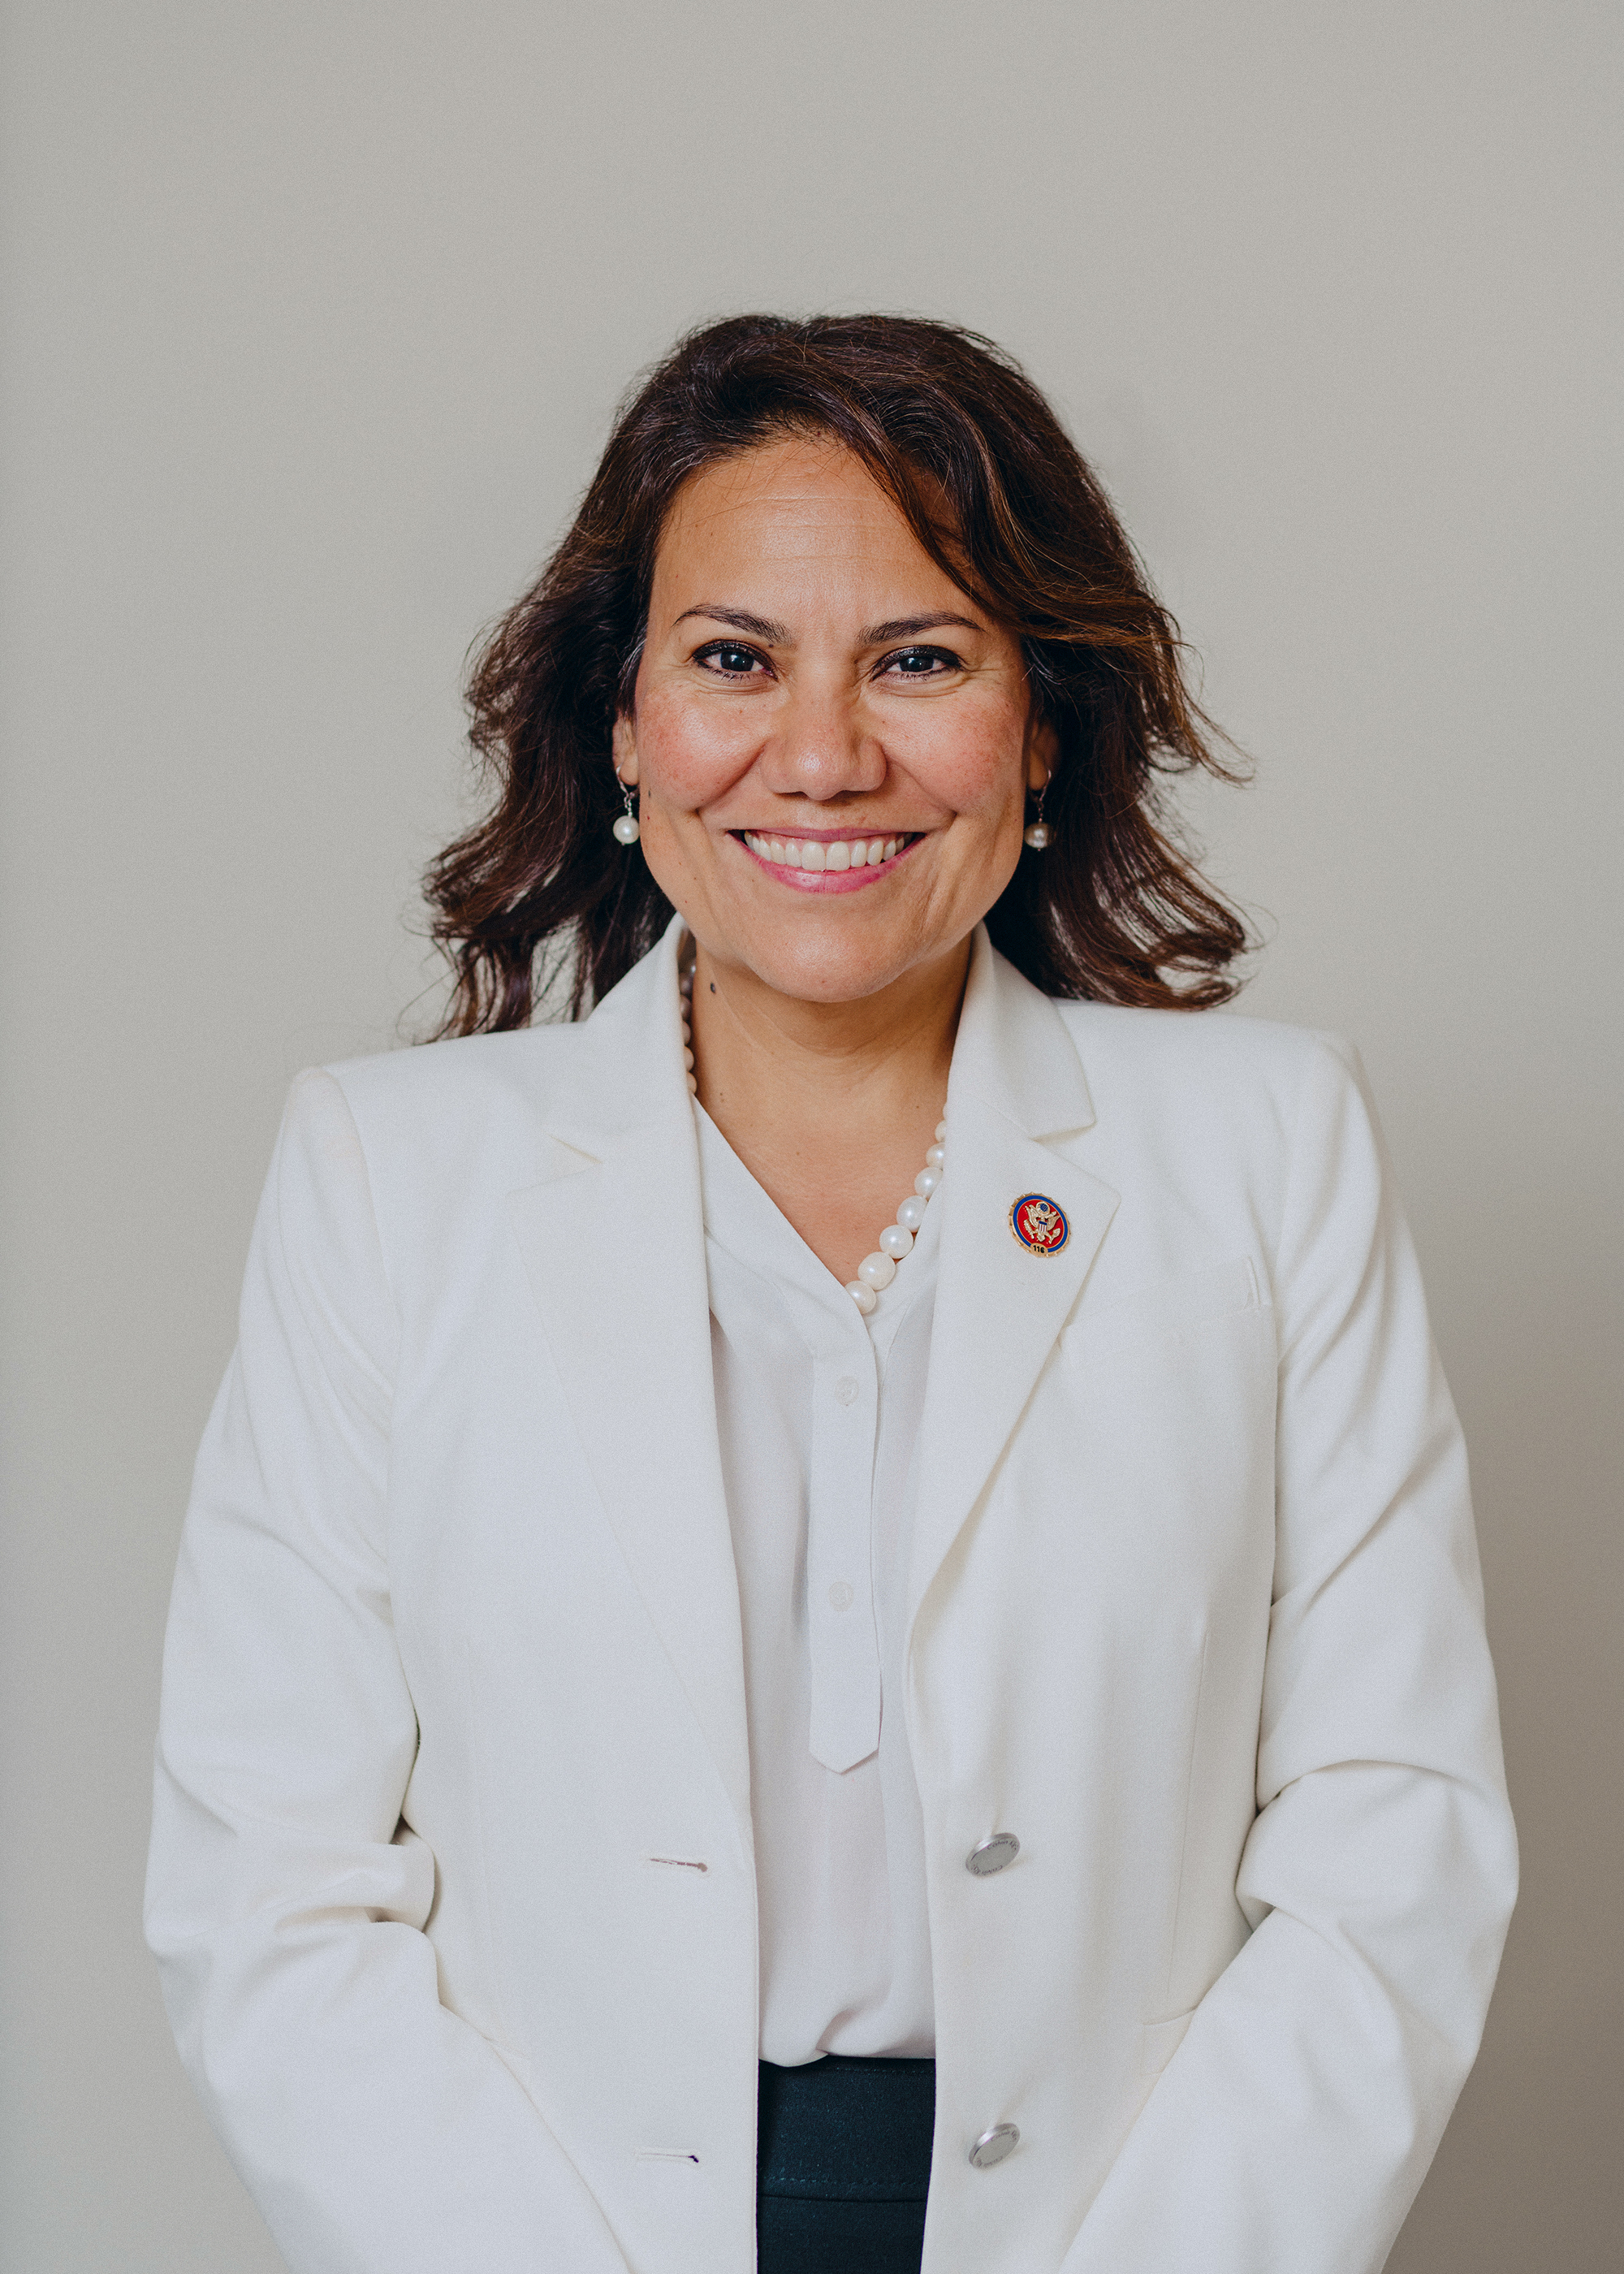 Rep. Veronica Escobar